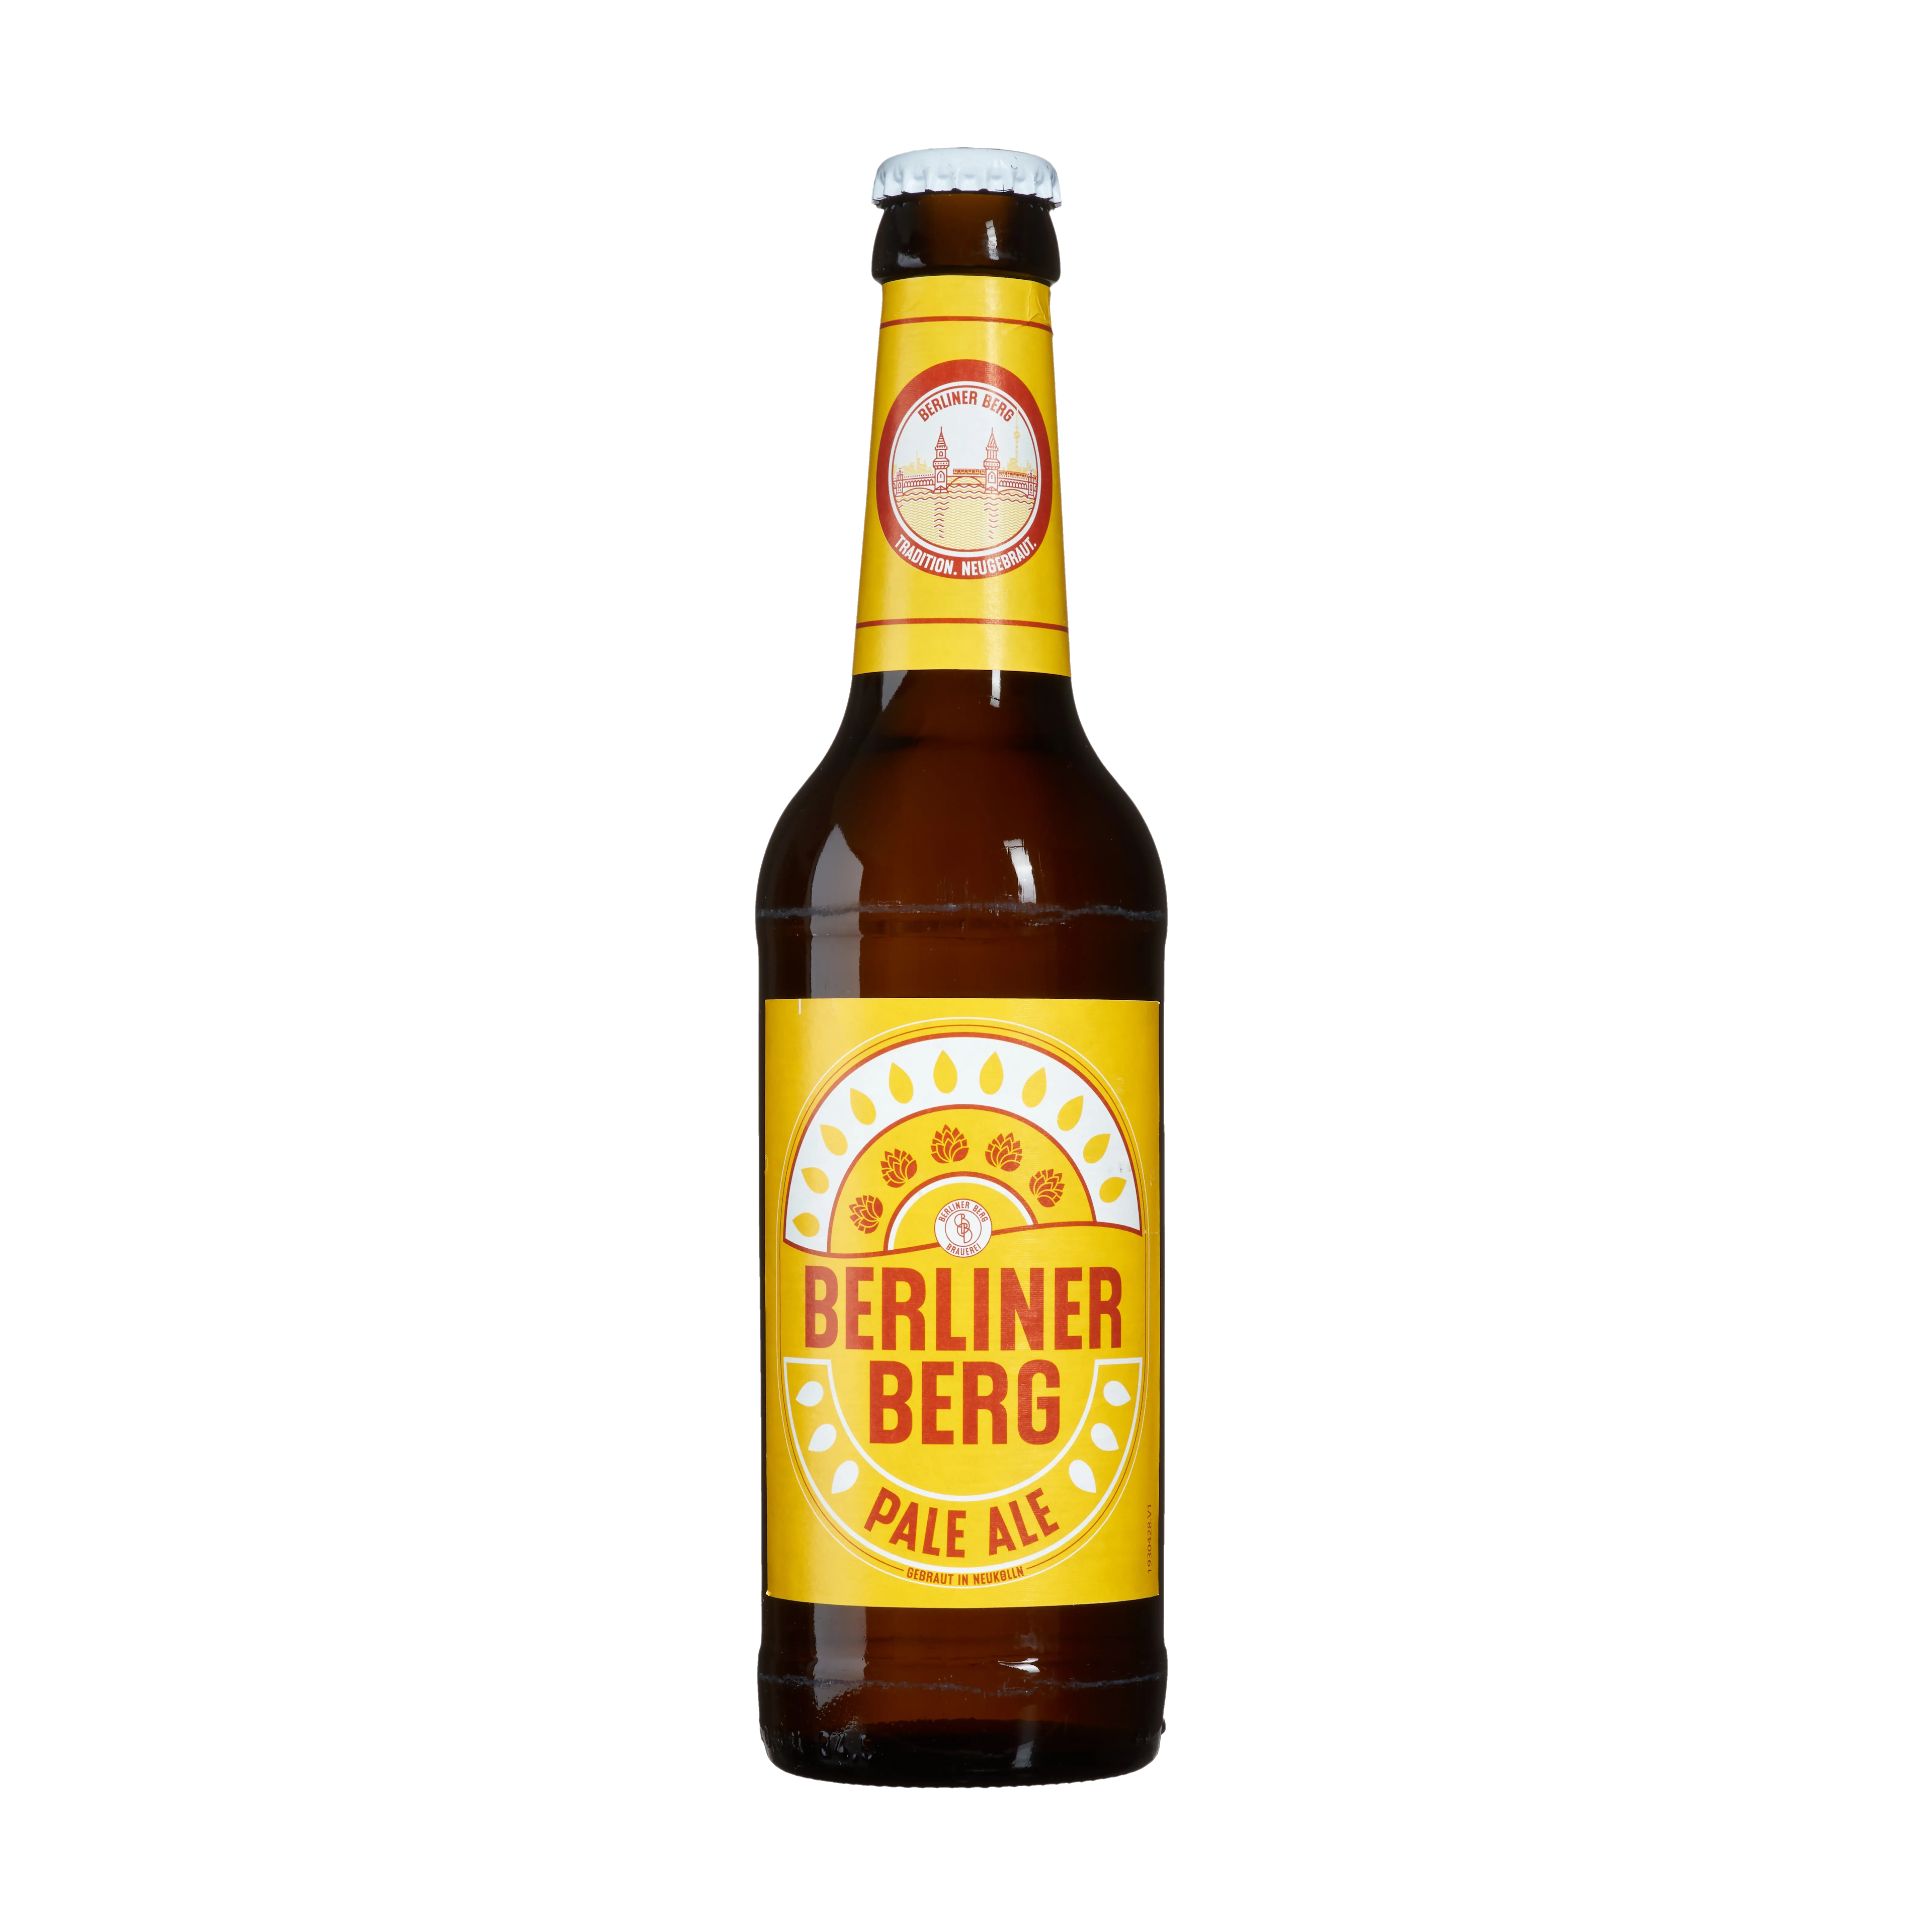 Brauerei Berliner Berg Pale Ale